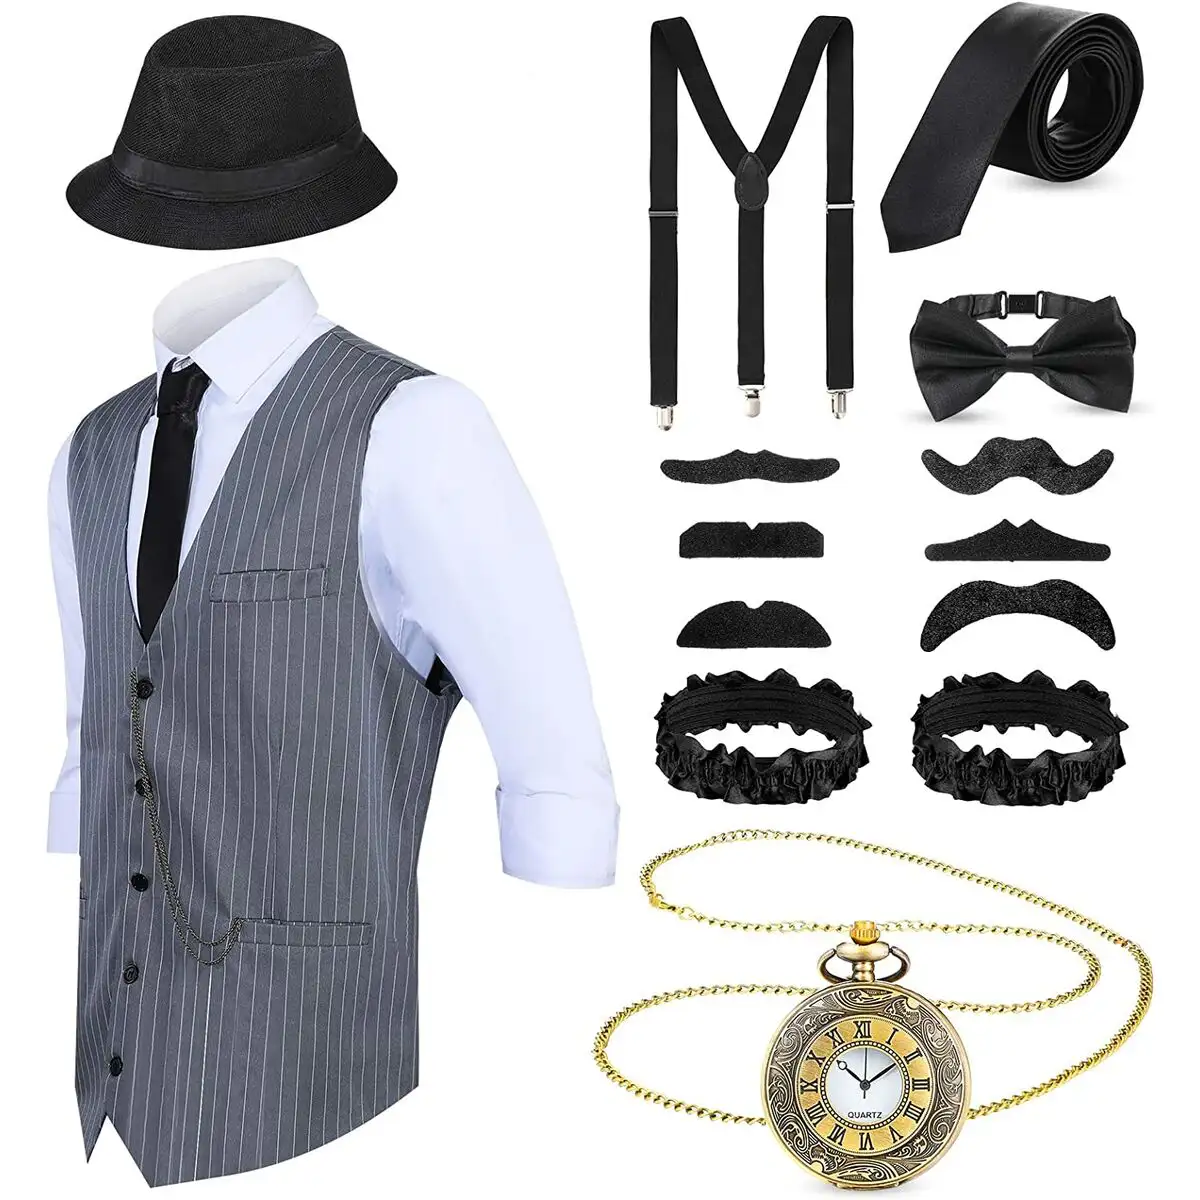 Accessoires de costumes gangster 1920s reconditionne a _4792. DIAYTAR SENEGAL - L'Art de Vivre le Shopping en Ligne. Découvrez notre plateforme intuitive et trouvez des produits qui vous inspirent et vous enchantent, à chaque clic.